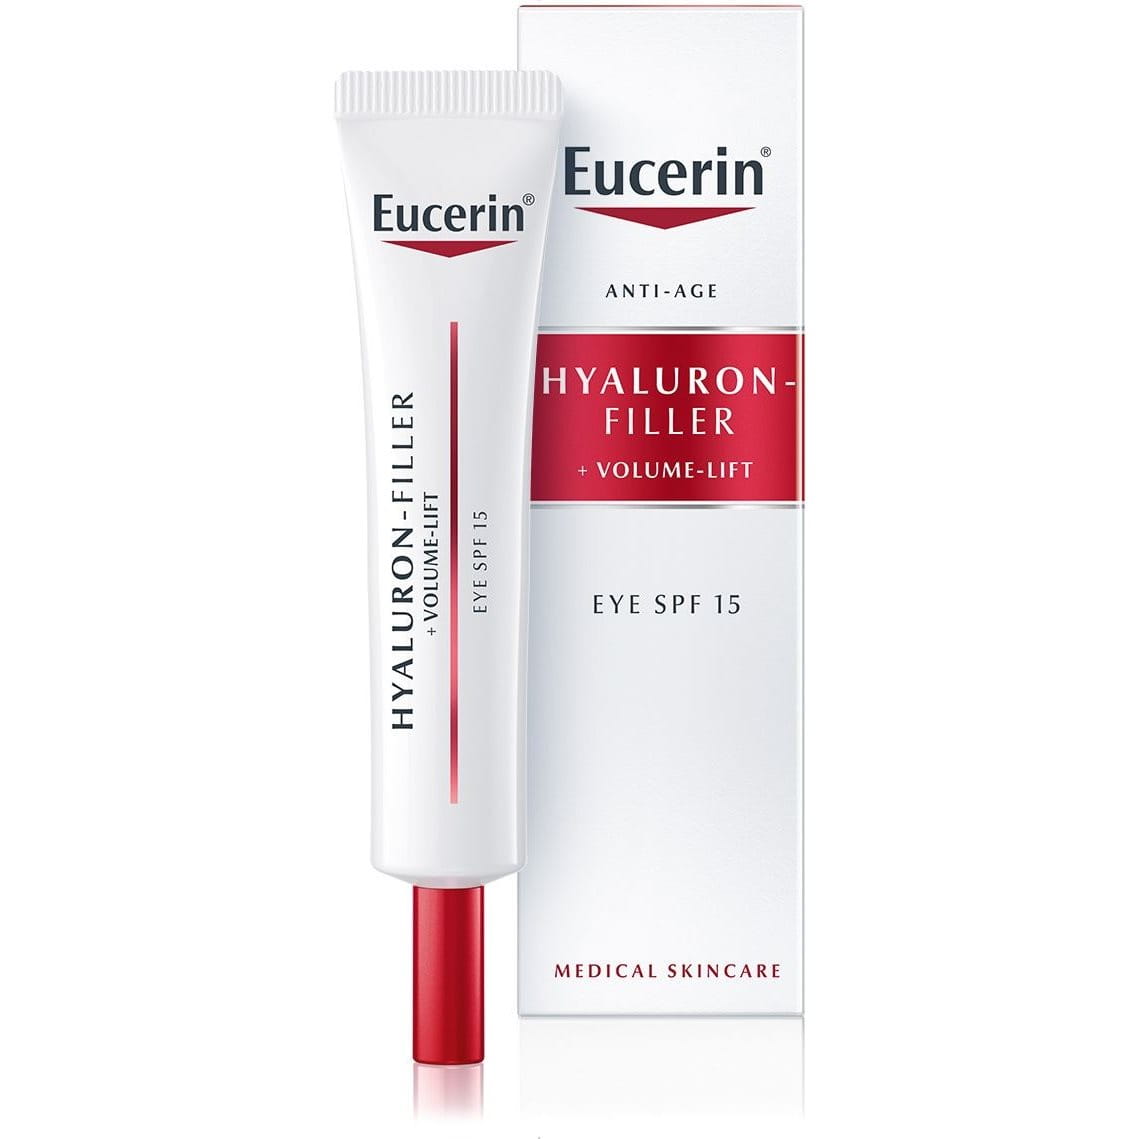 Eucerin Hyaluron-Filler + Volume-Lift Contorno de Olhos FPS 15